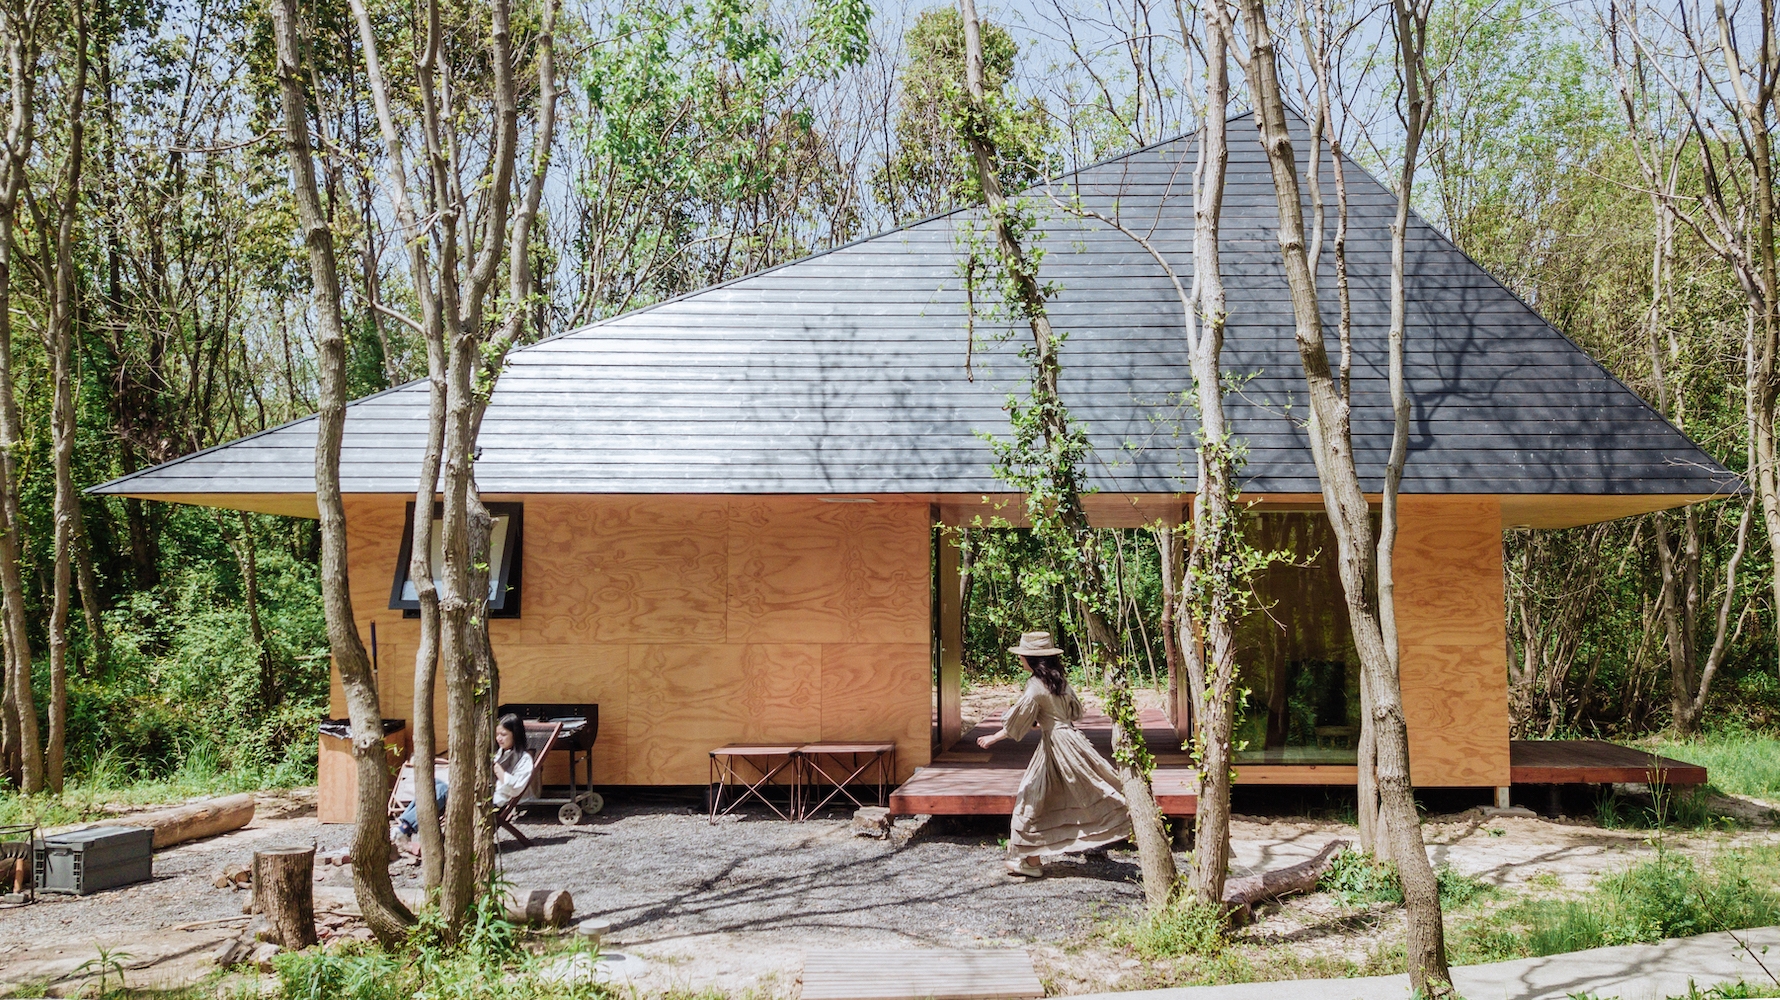 La capanna in legno tra i cespugli: il rifugio nella natura di una famiglia di professionisti del web a Wuhan